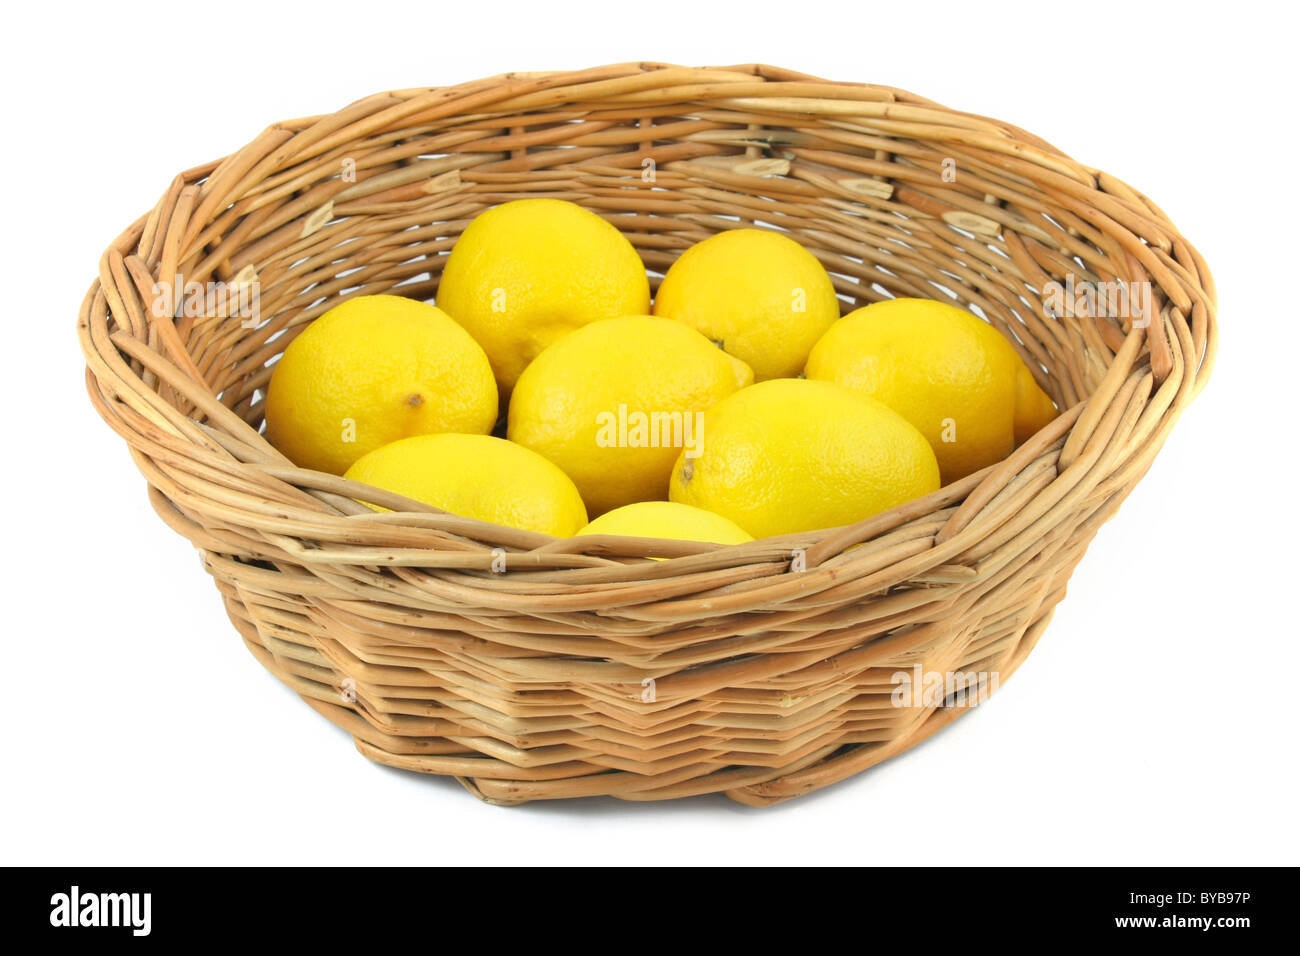 lemons in basket Stock Photo